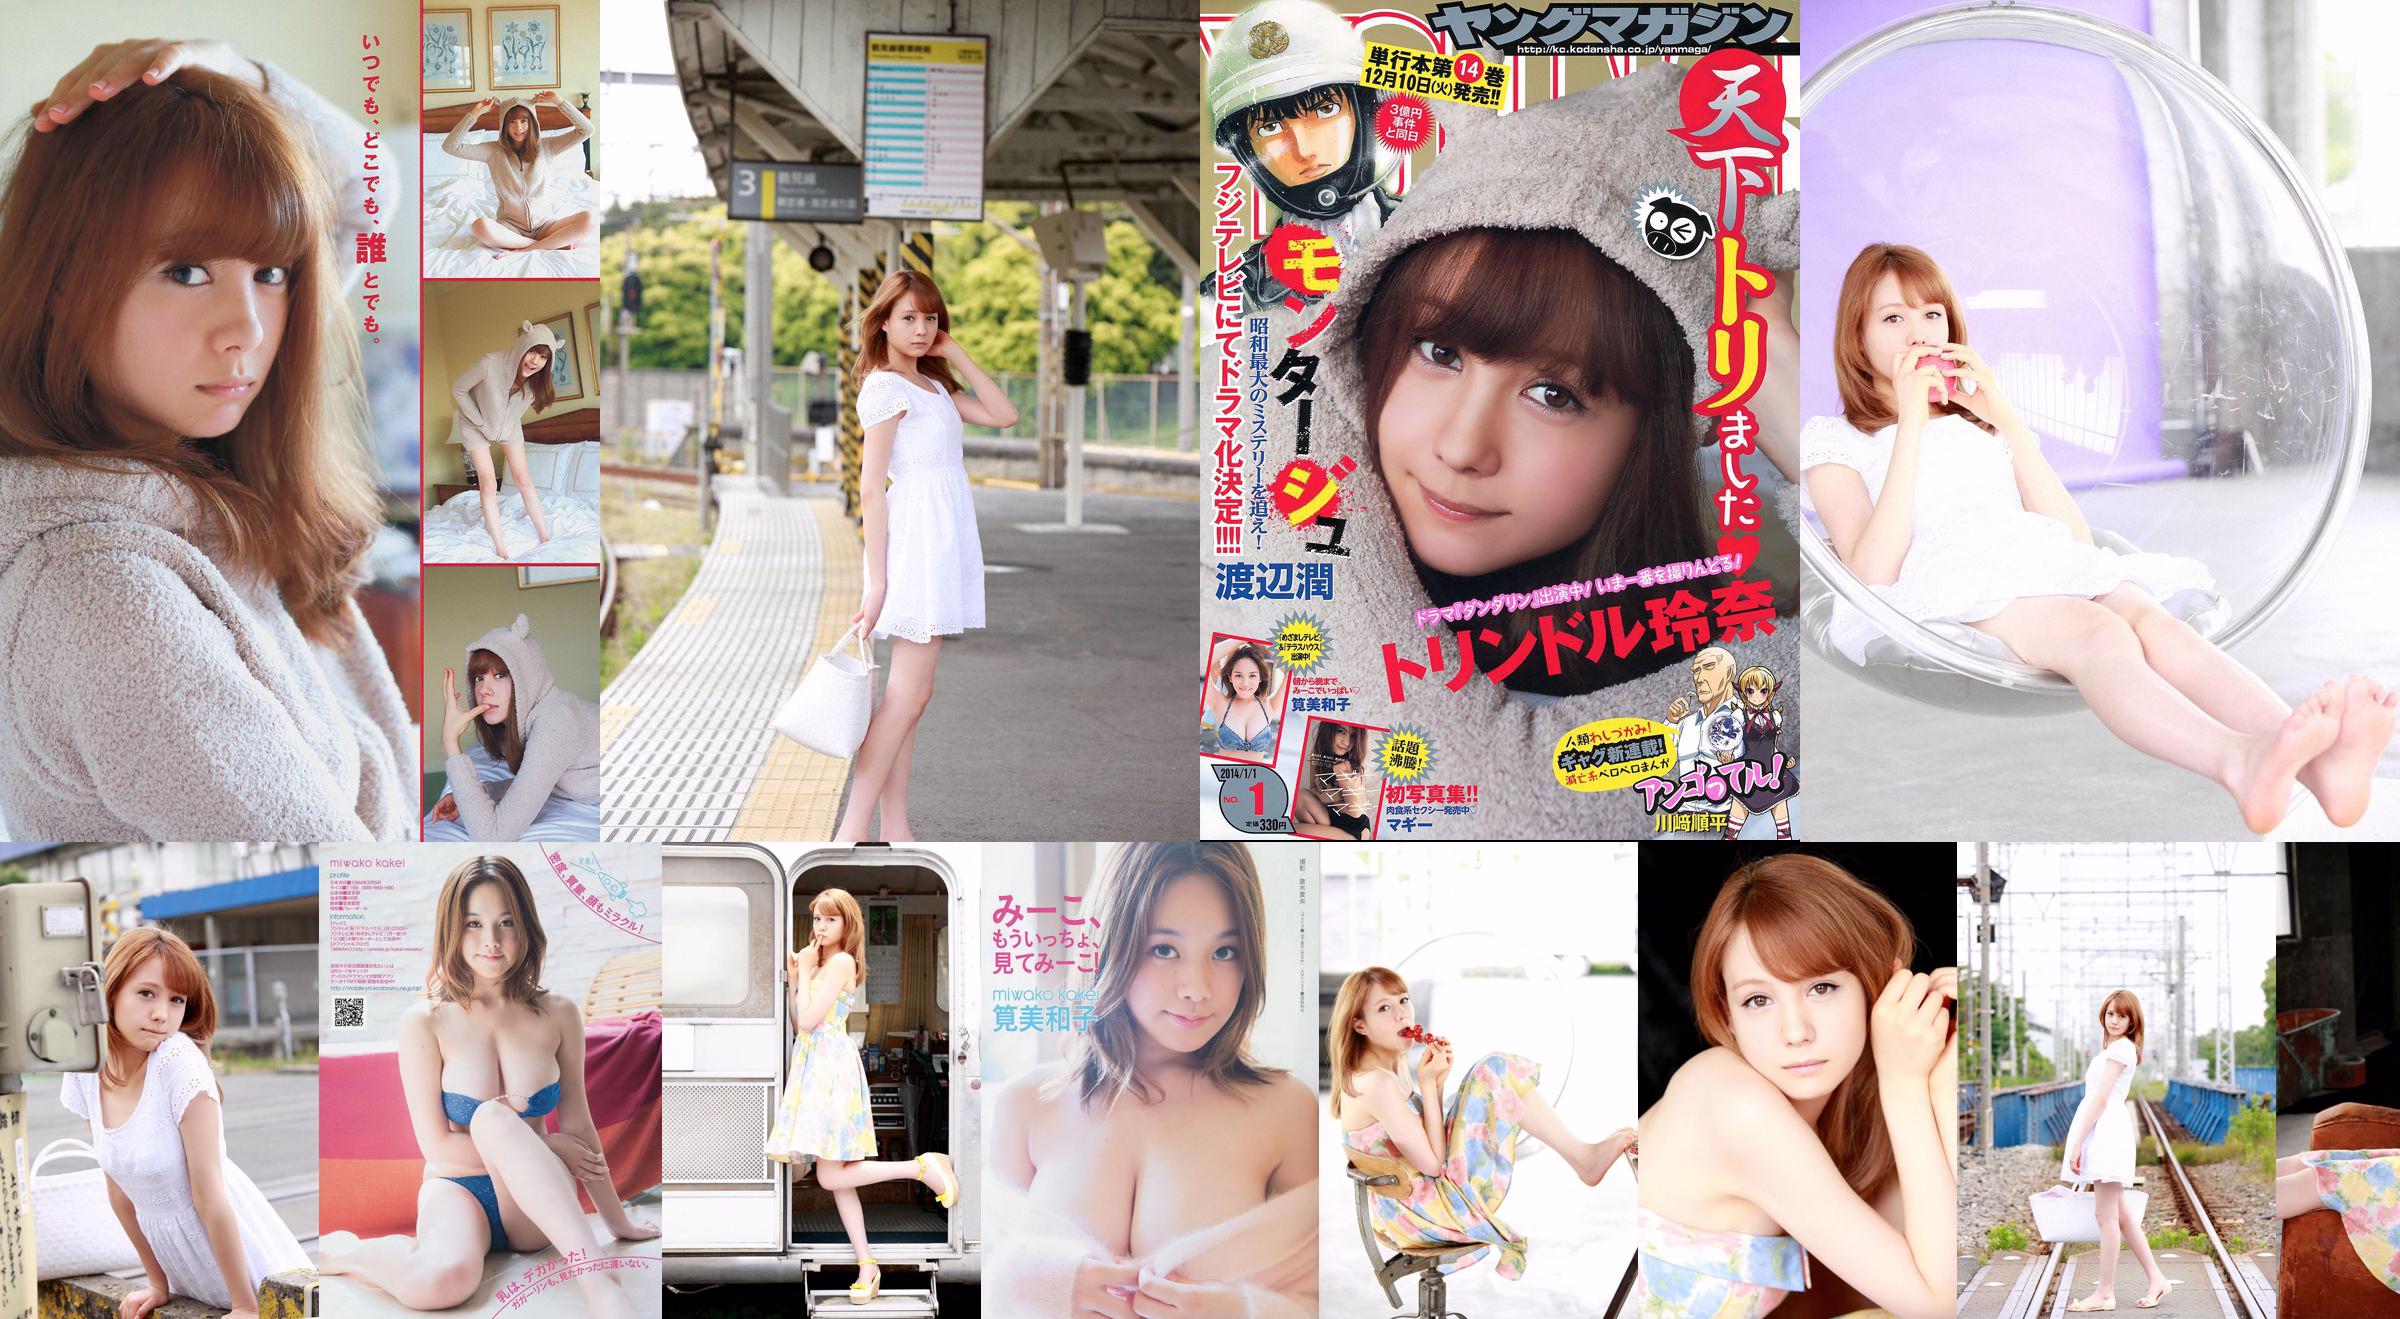 [Young Magazine] Reina Triendl Maggie Miwako Kakei 2014 No.01 Photograph No.362f83 Page 3